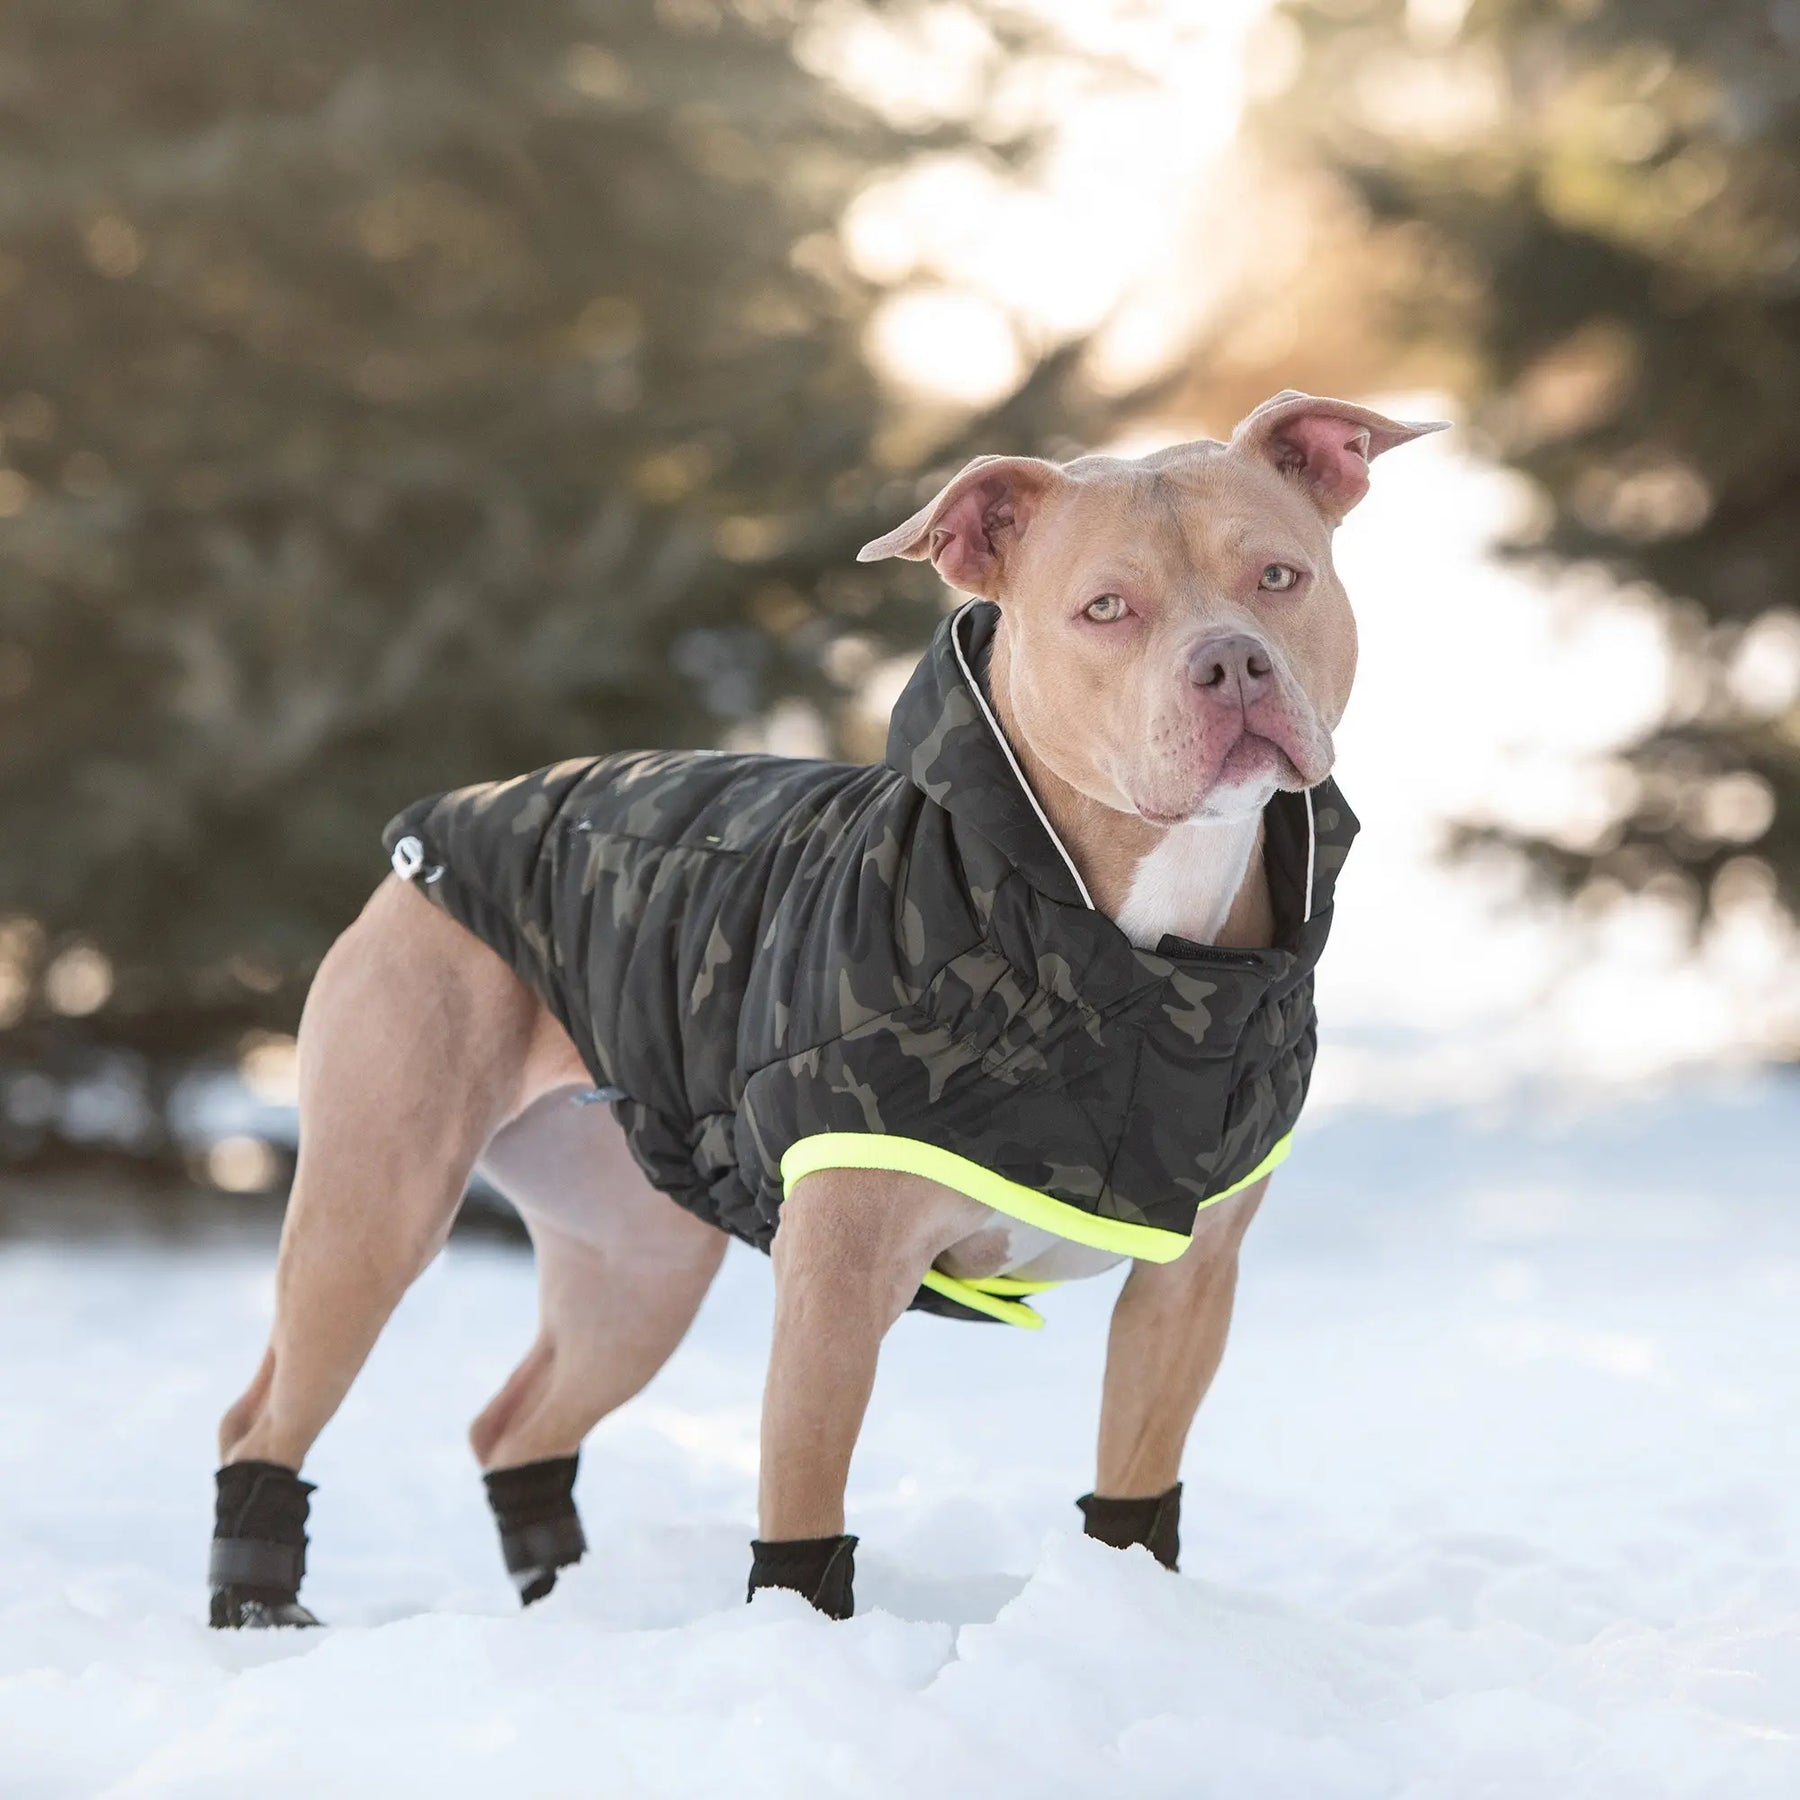 manteau camouflage chien